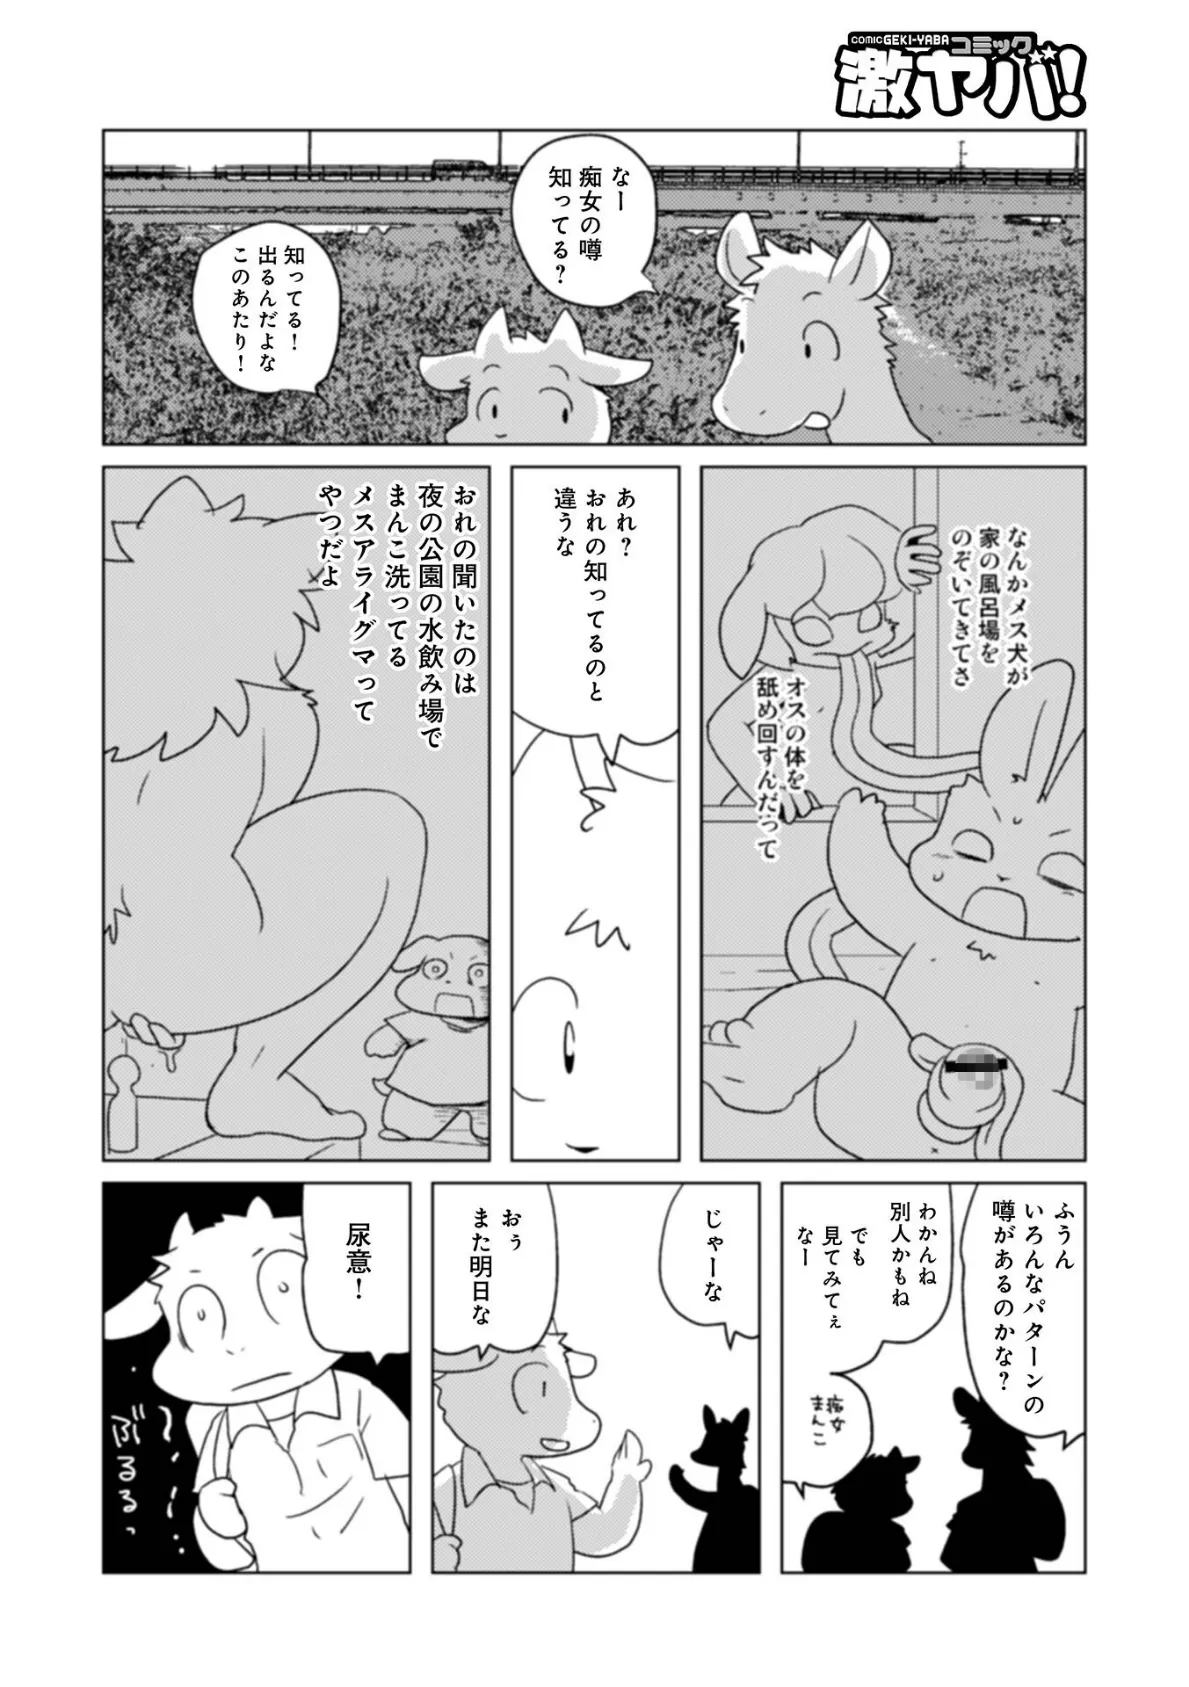 魔界探偵サバトくん第1巻 8ページ